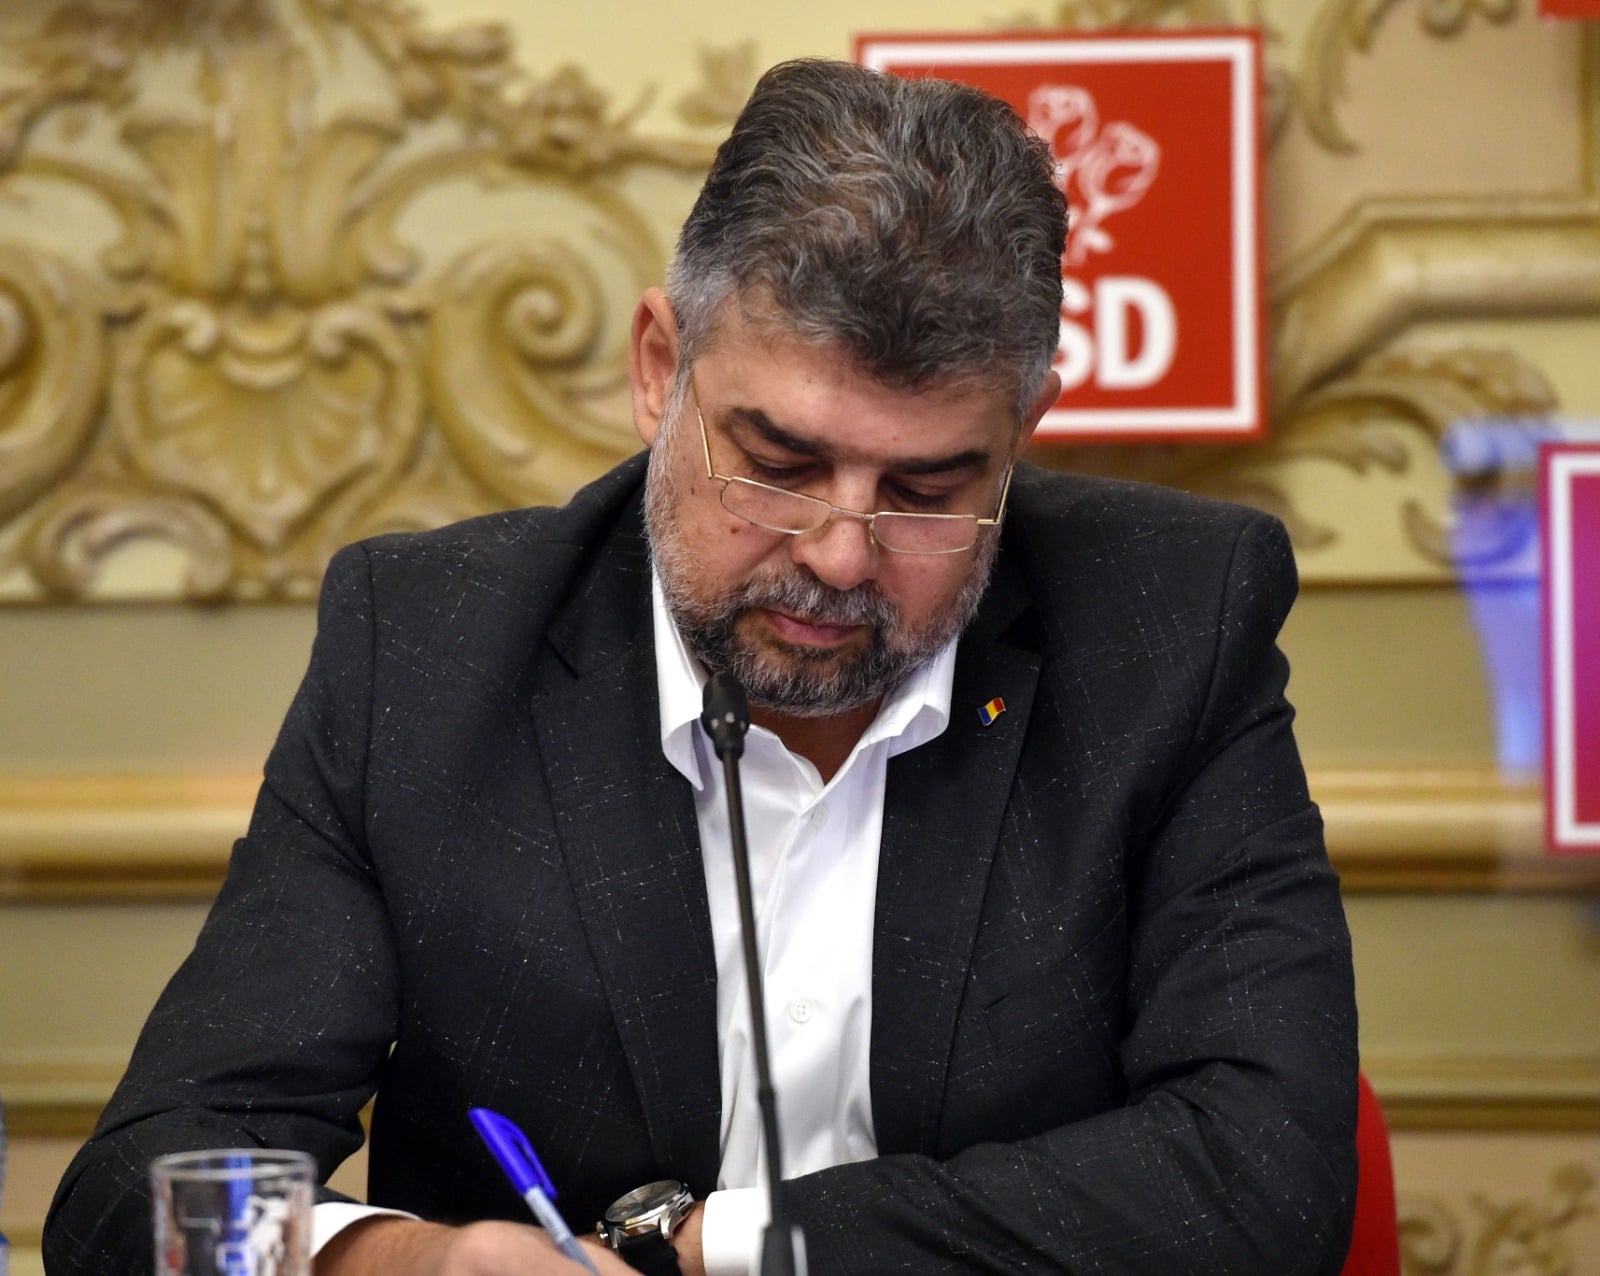 Marcel Ciolacu a fost ales vicepreședinte al Internaționalei Socialiste pentru Europa Centrală și de Est